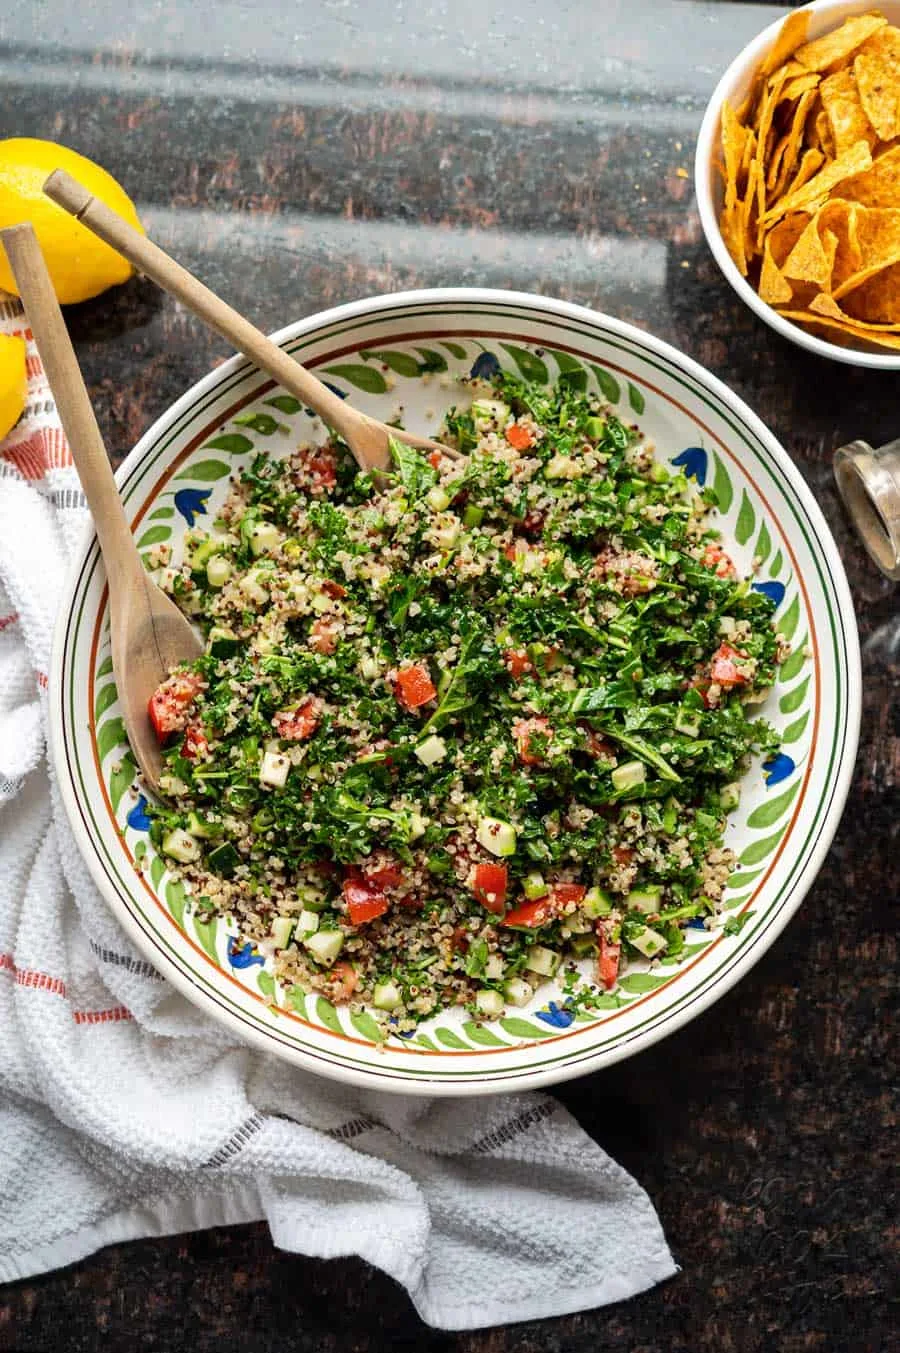 Image of kale quinoa tabbouleh salad in a large ceramic bowl, on granite countertop.